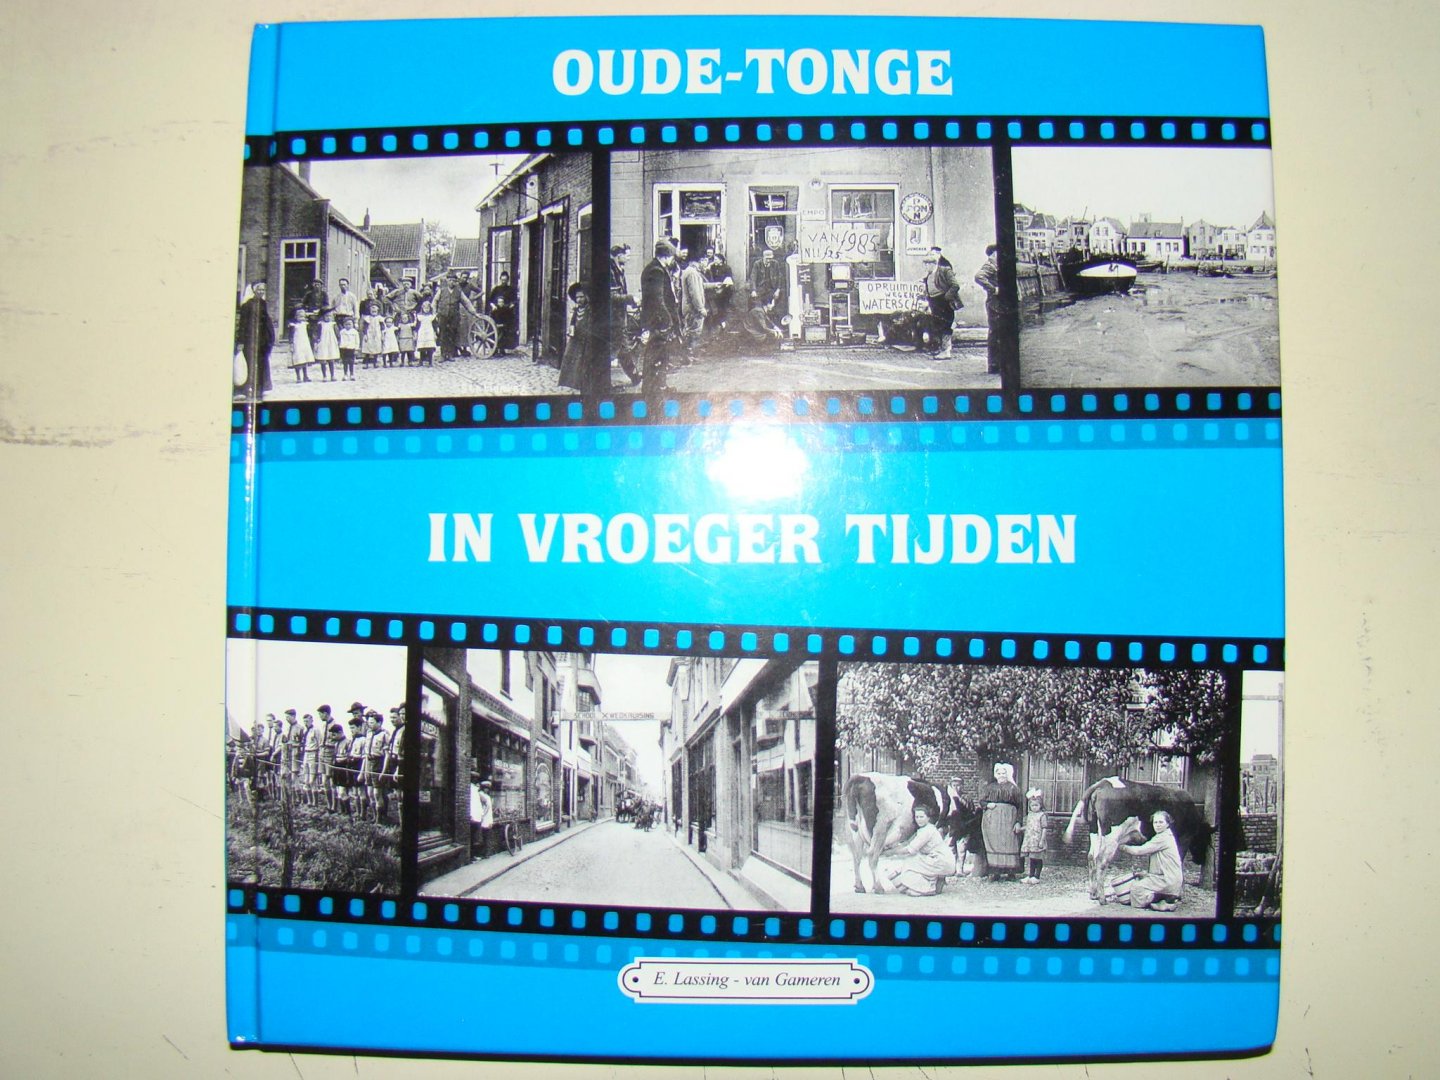 Lassing-van Gameren, E. - Oude-Tonge in vroeger tijden / druk 1